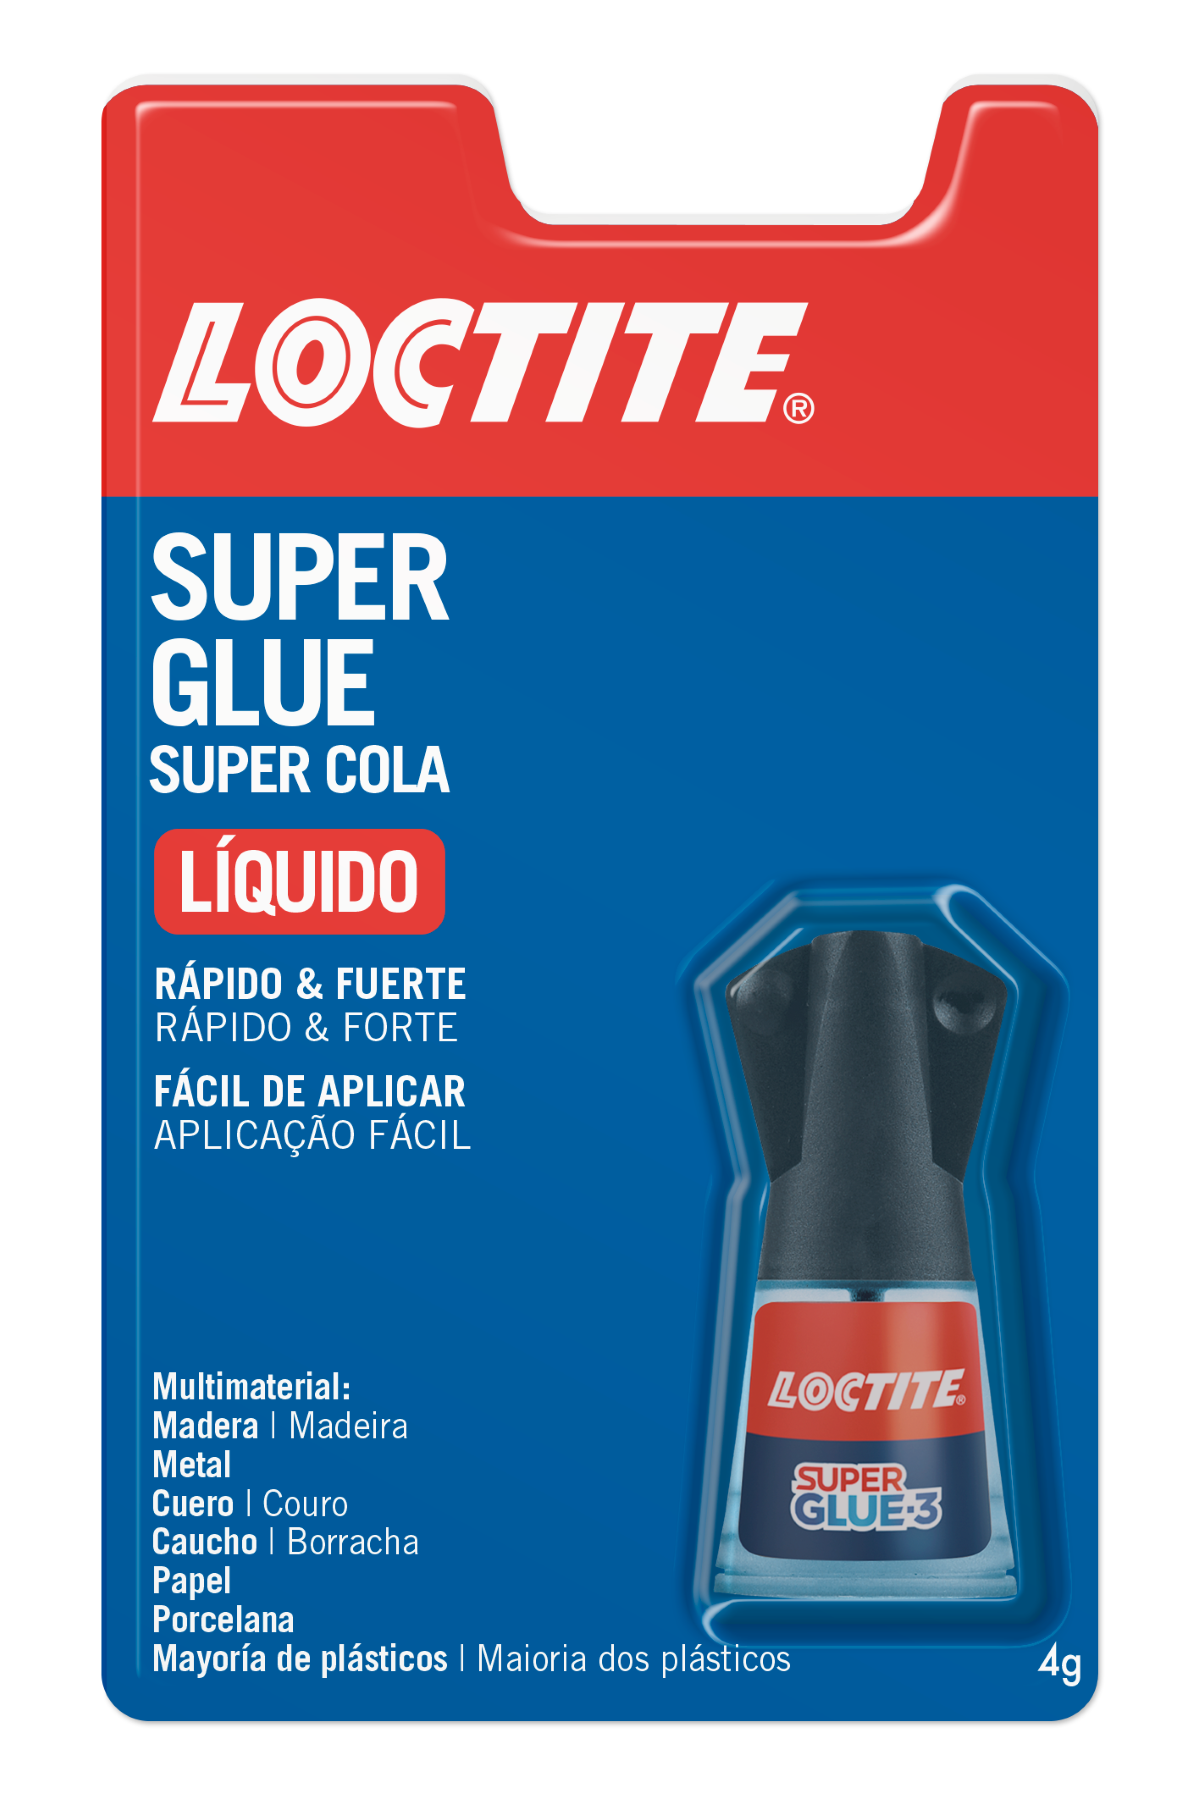 LOCTITE SUPER GLUE-3 Pincel